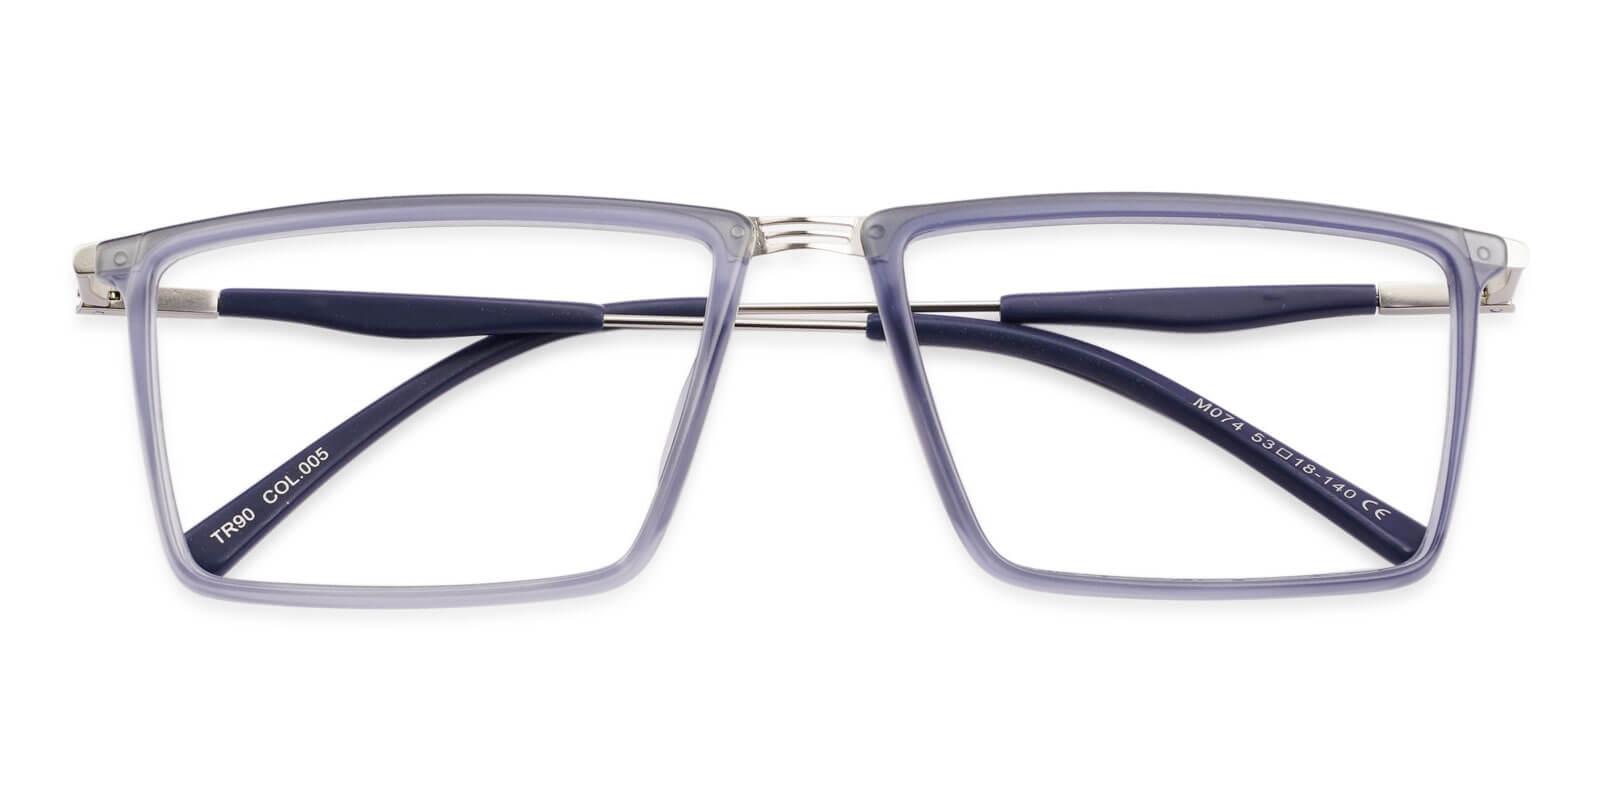 Rhode Blue TR Eyeglasses , UniversalBridgeFit Frames from ABBE Glasses